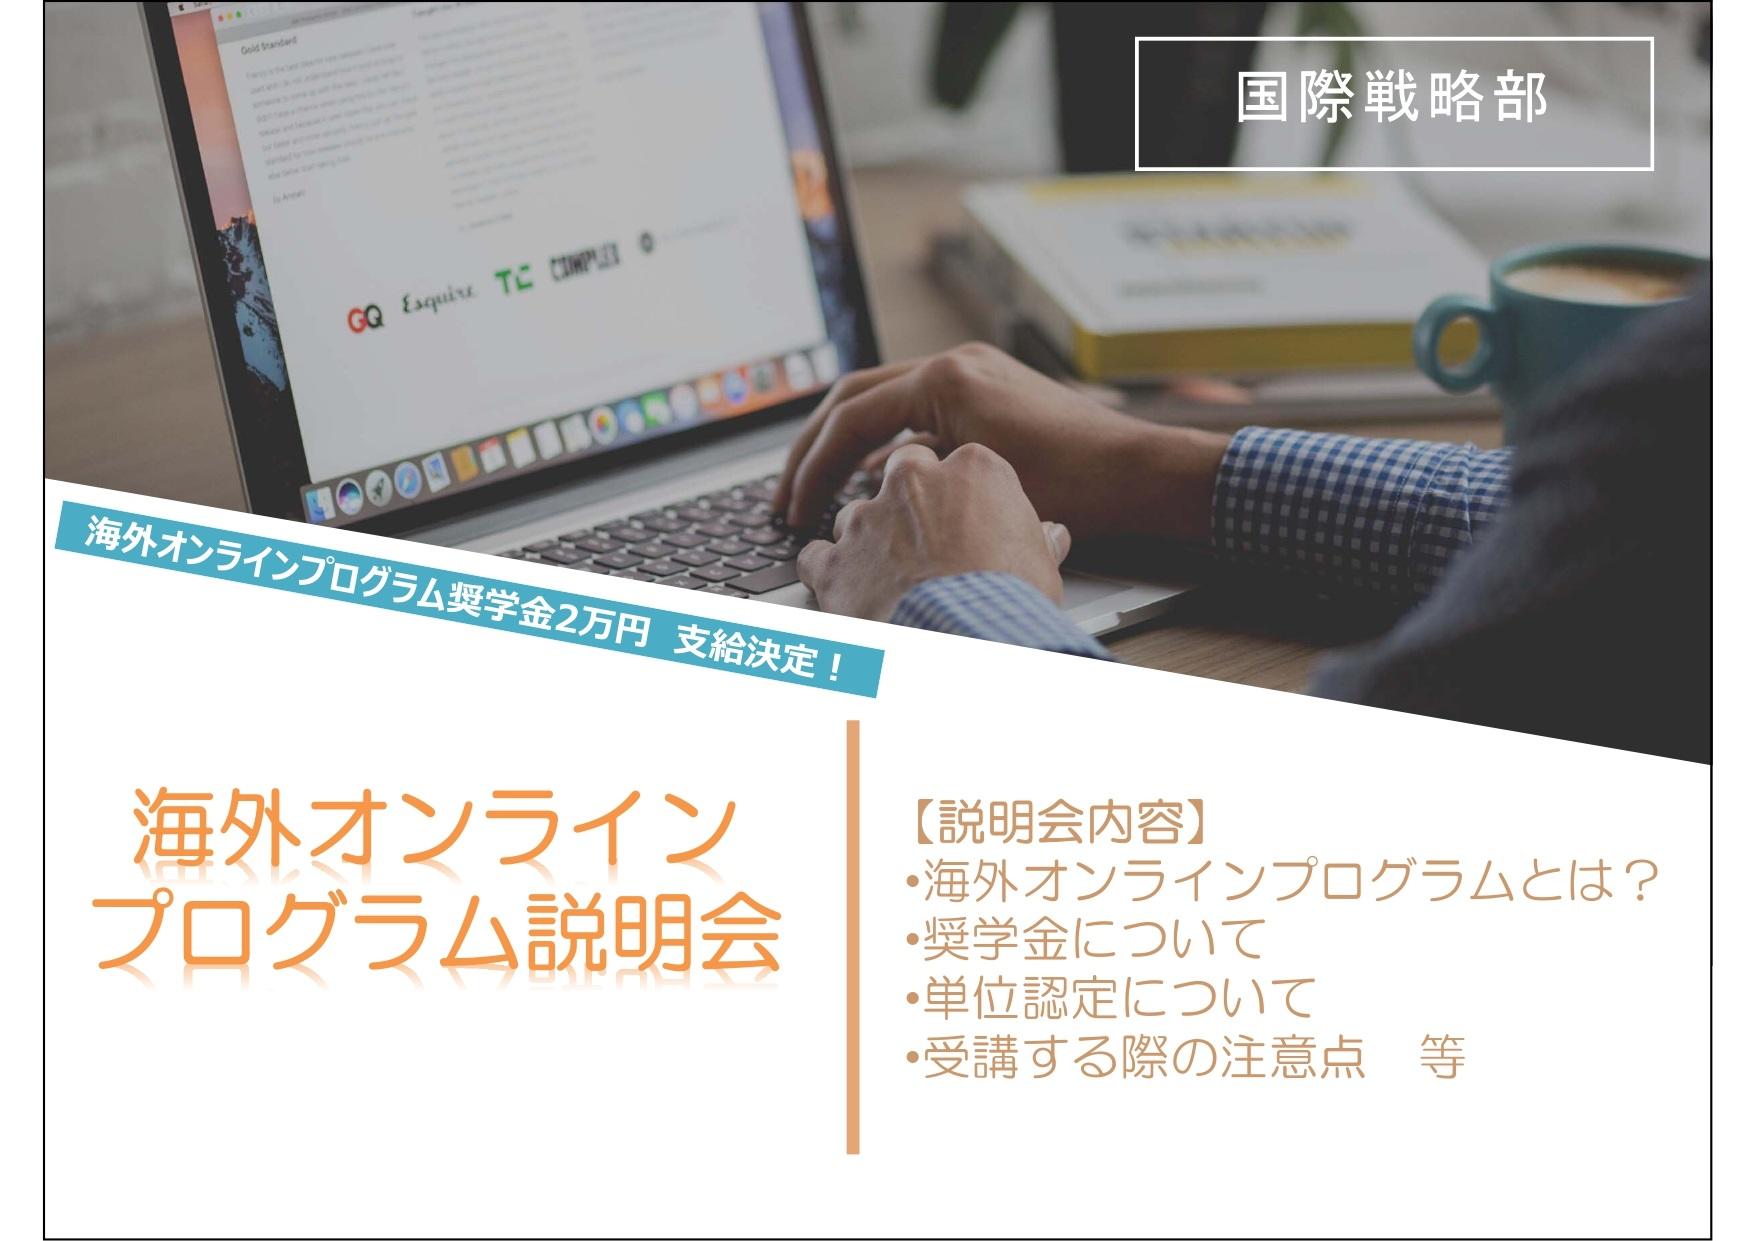 神田外語大学 海外大学のオンライン授業を受講できる「海外大学オンラインプログラム」を導入